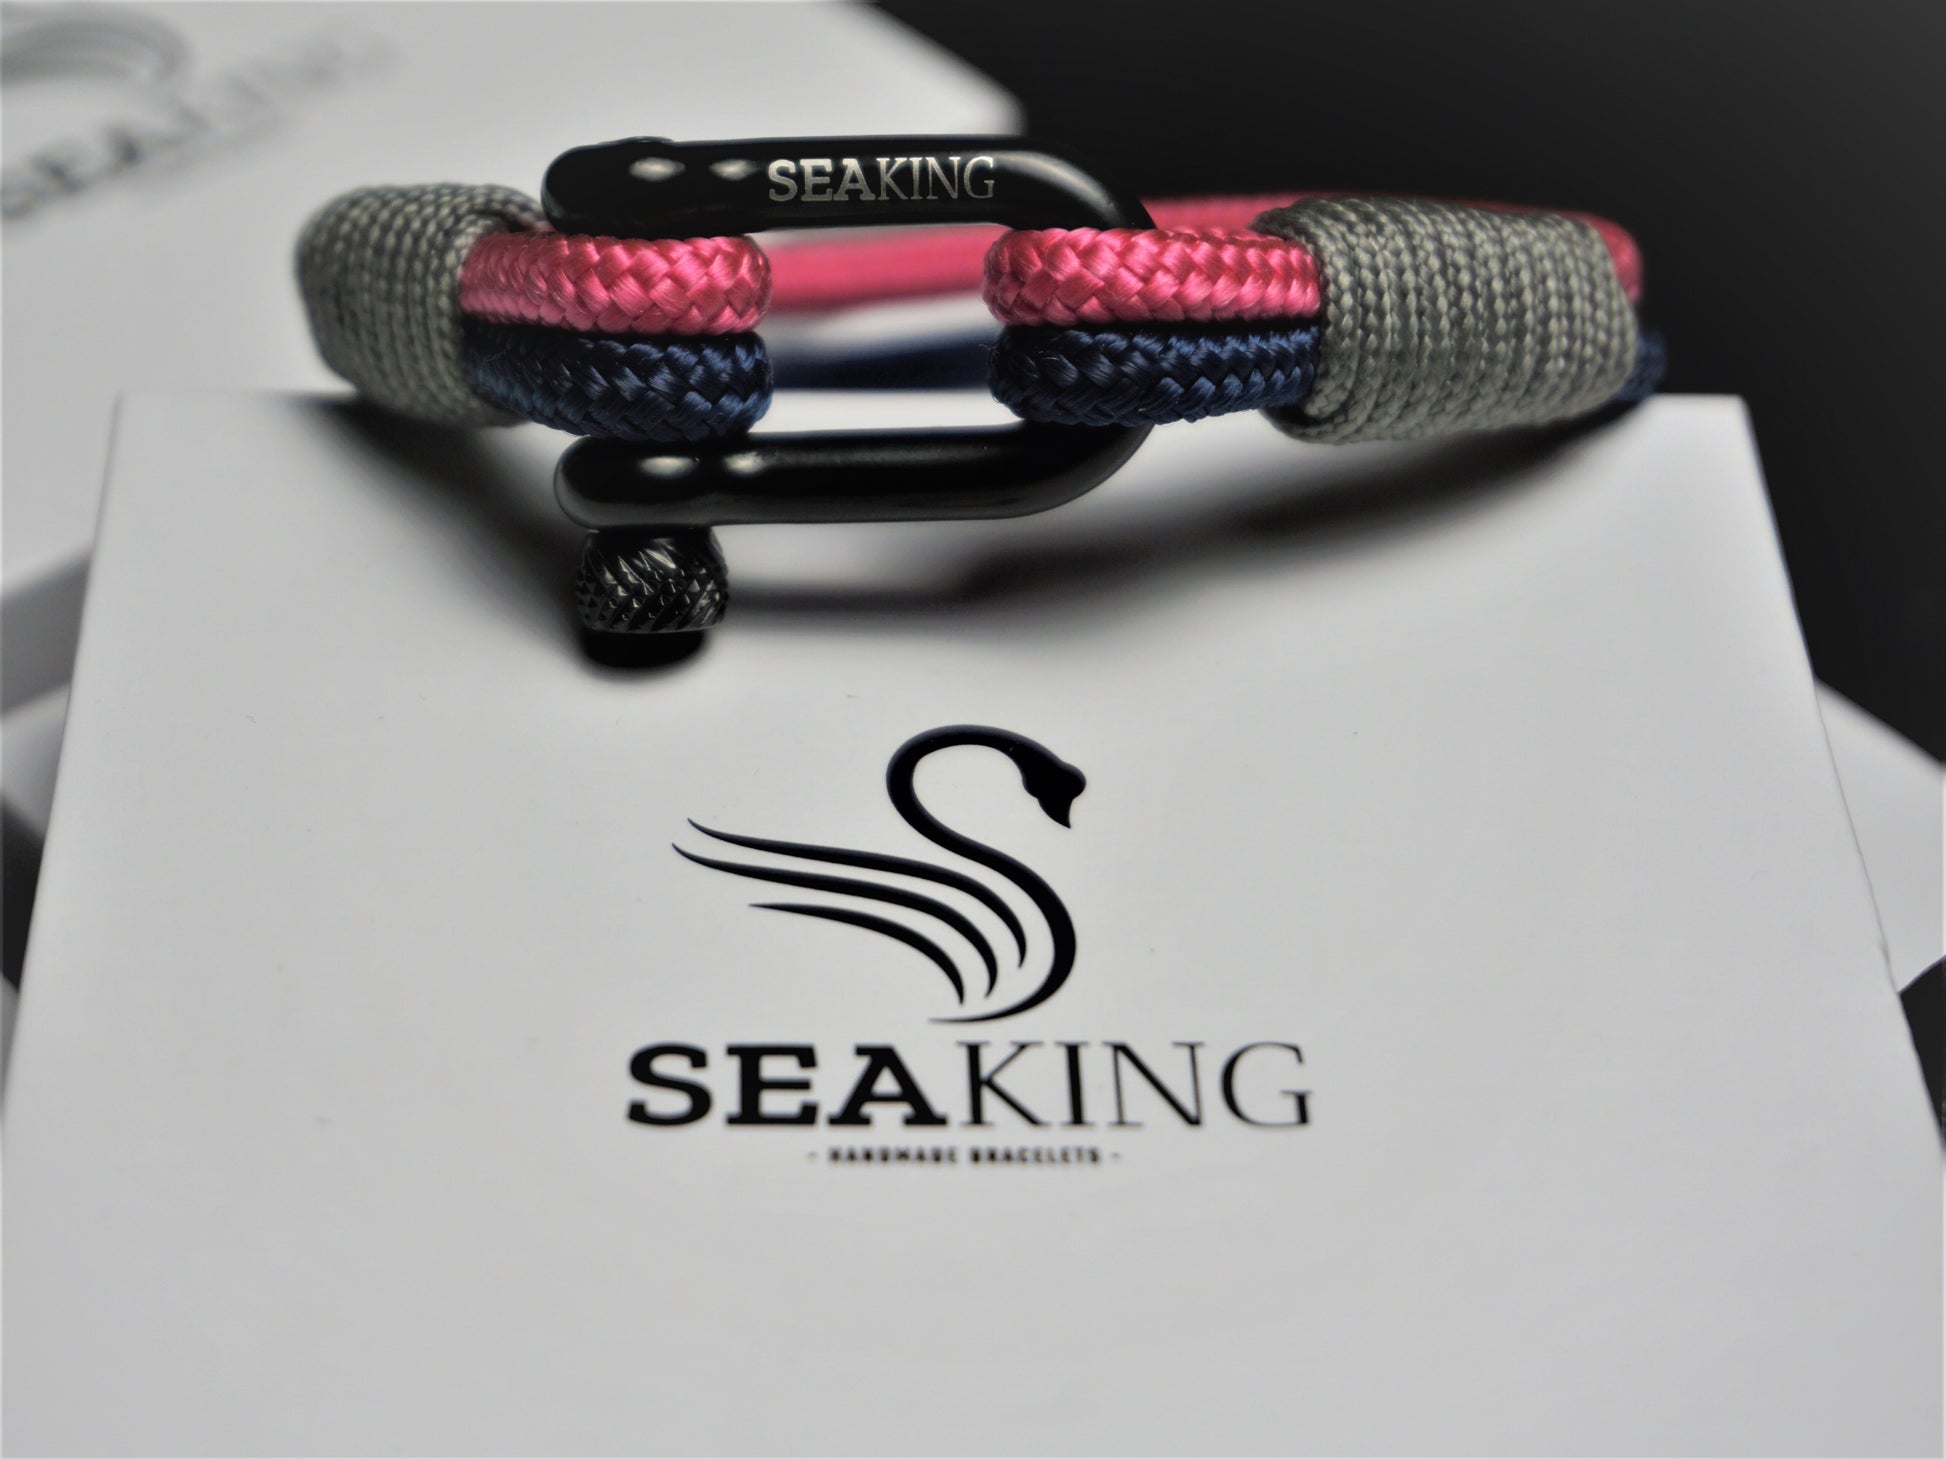 Attersee - Zuckerwatte - Sea King Bracelets